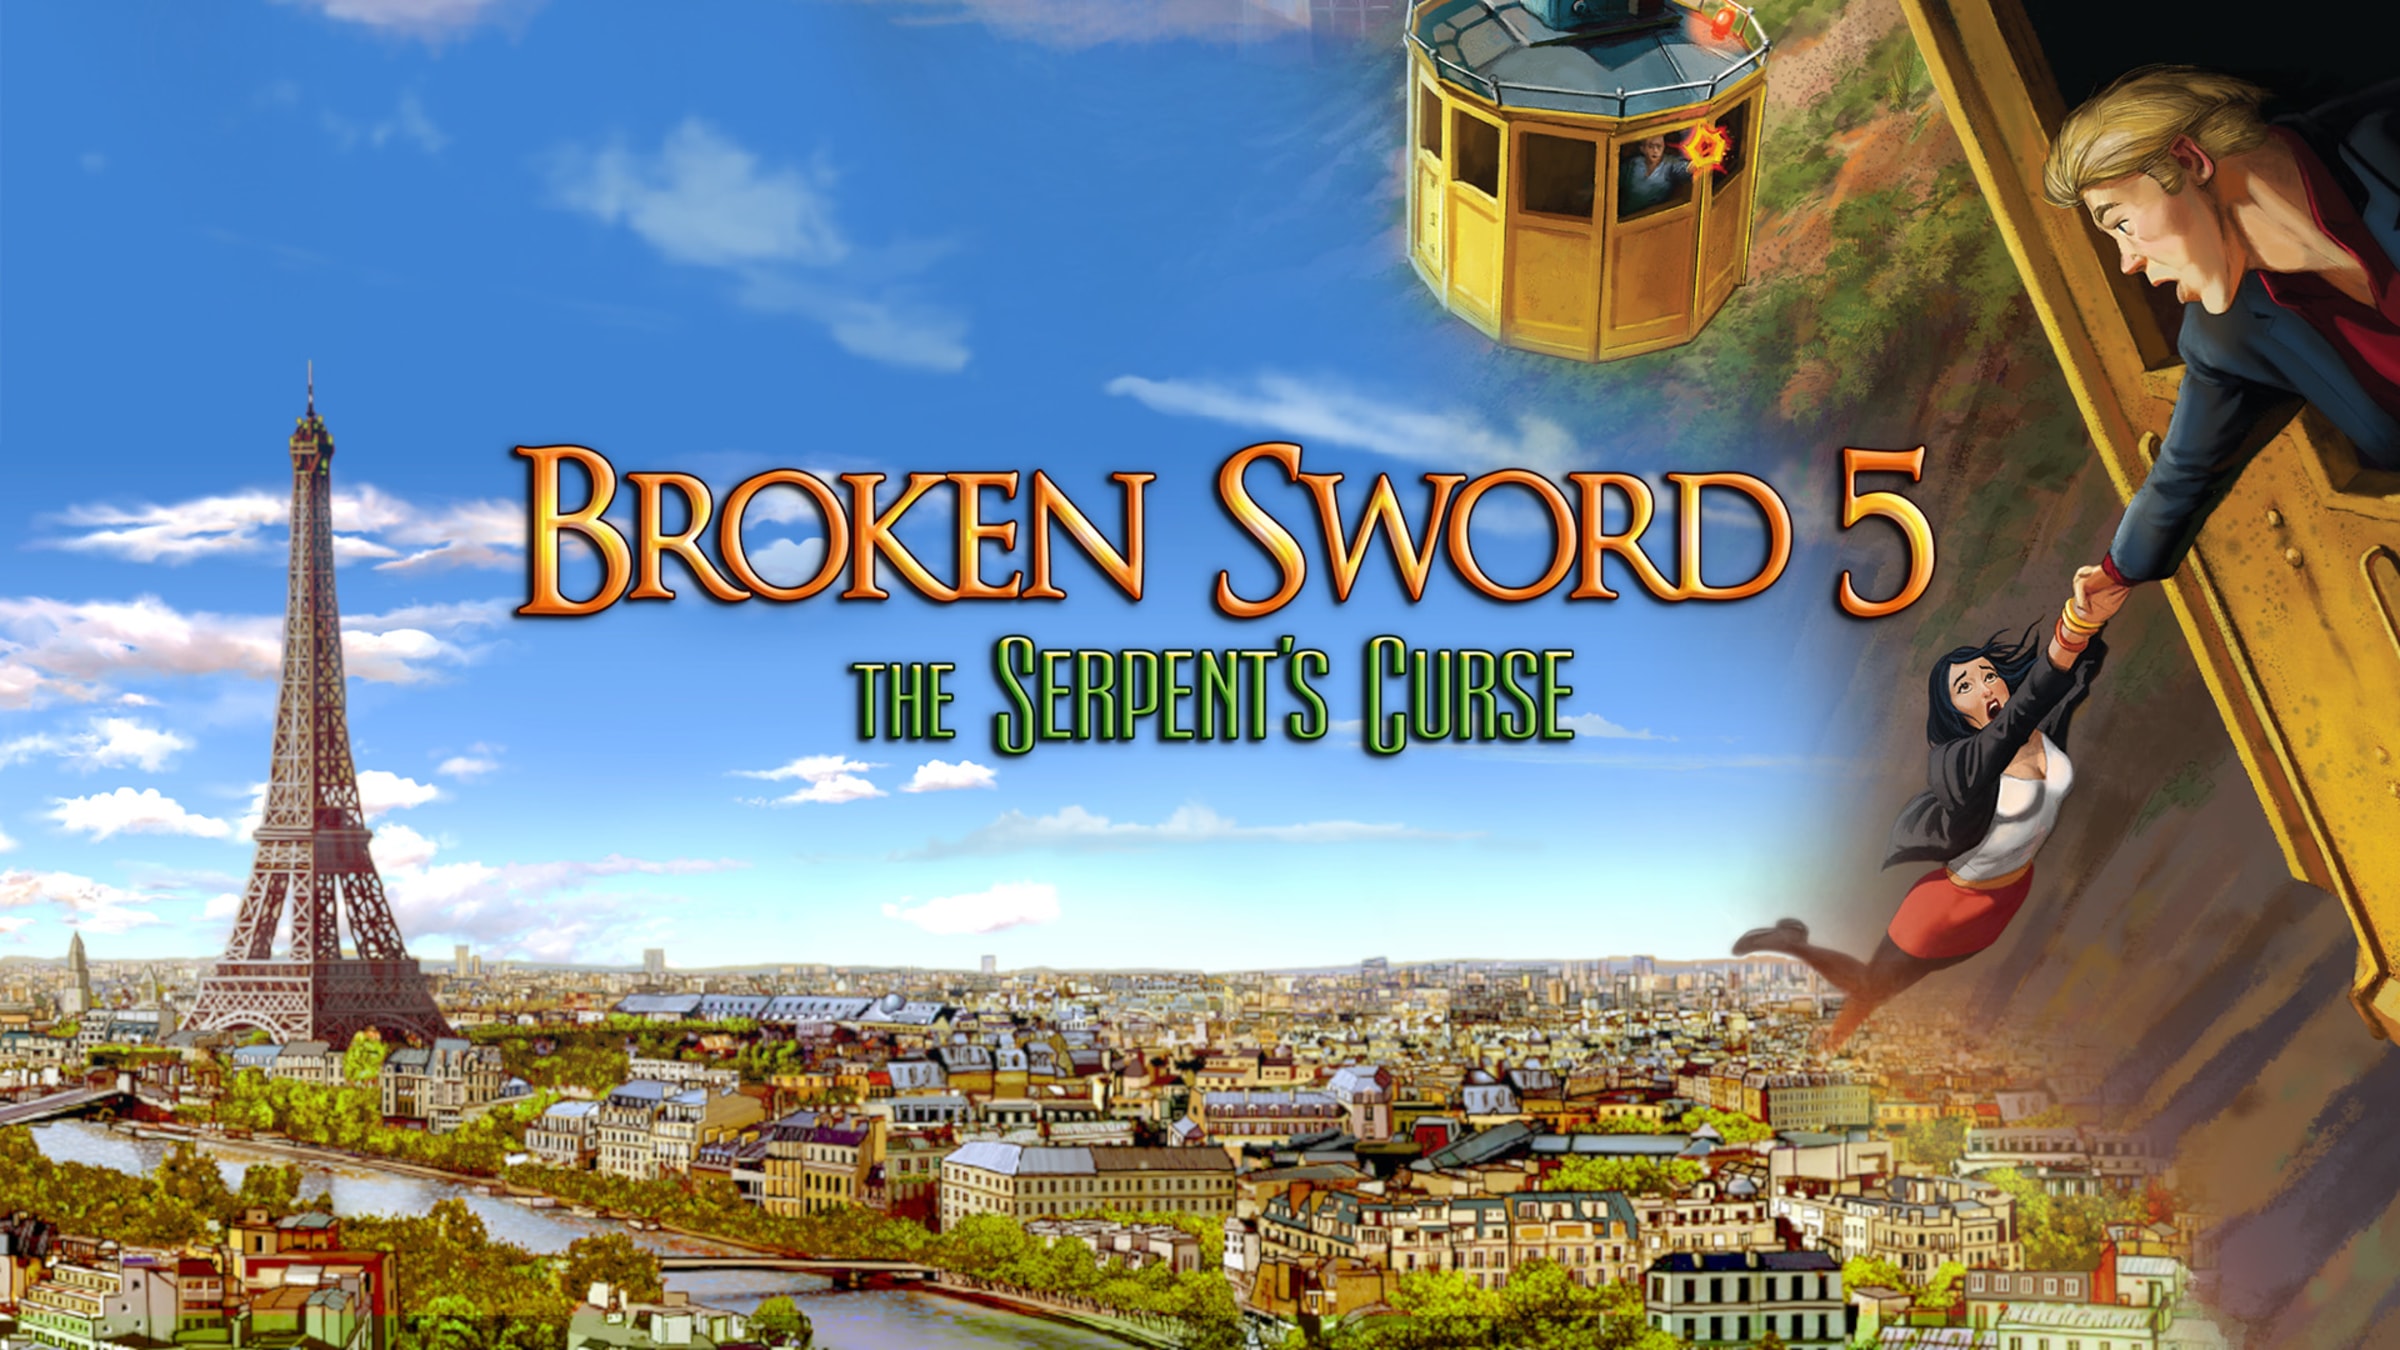 Broken Sword 5 - the Serpent's Curse (Nintendo Switch Digital Download) $2.99